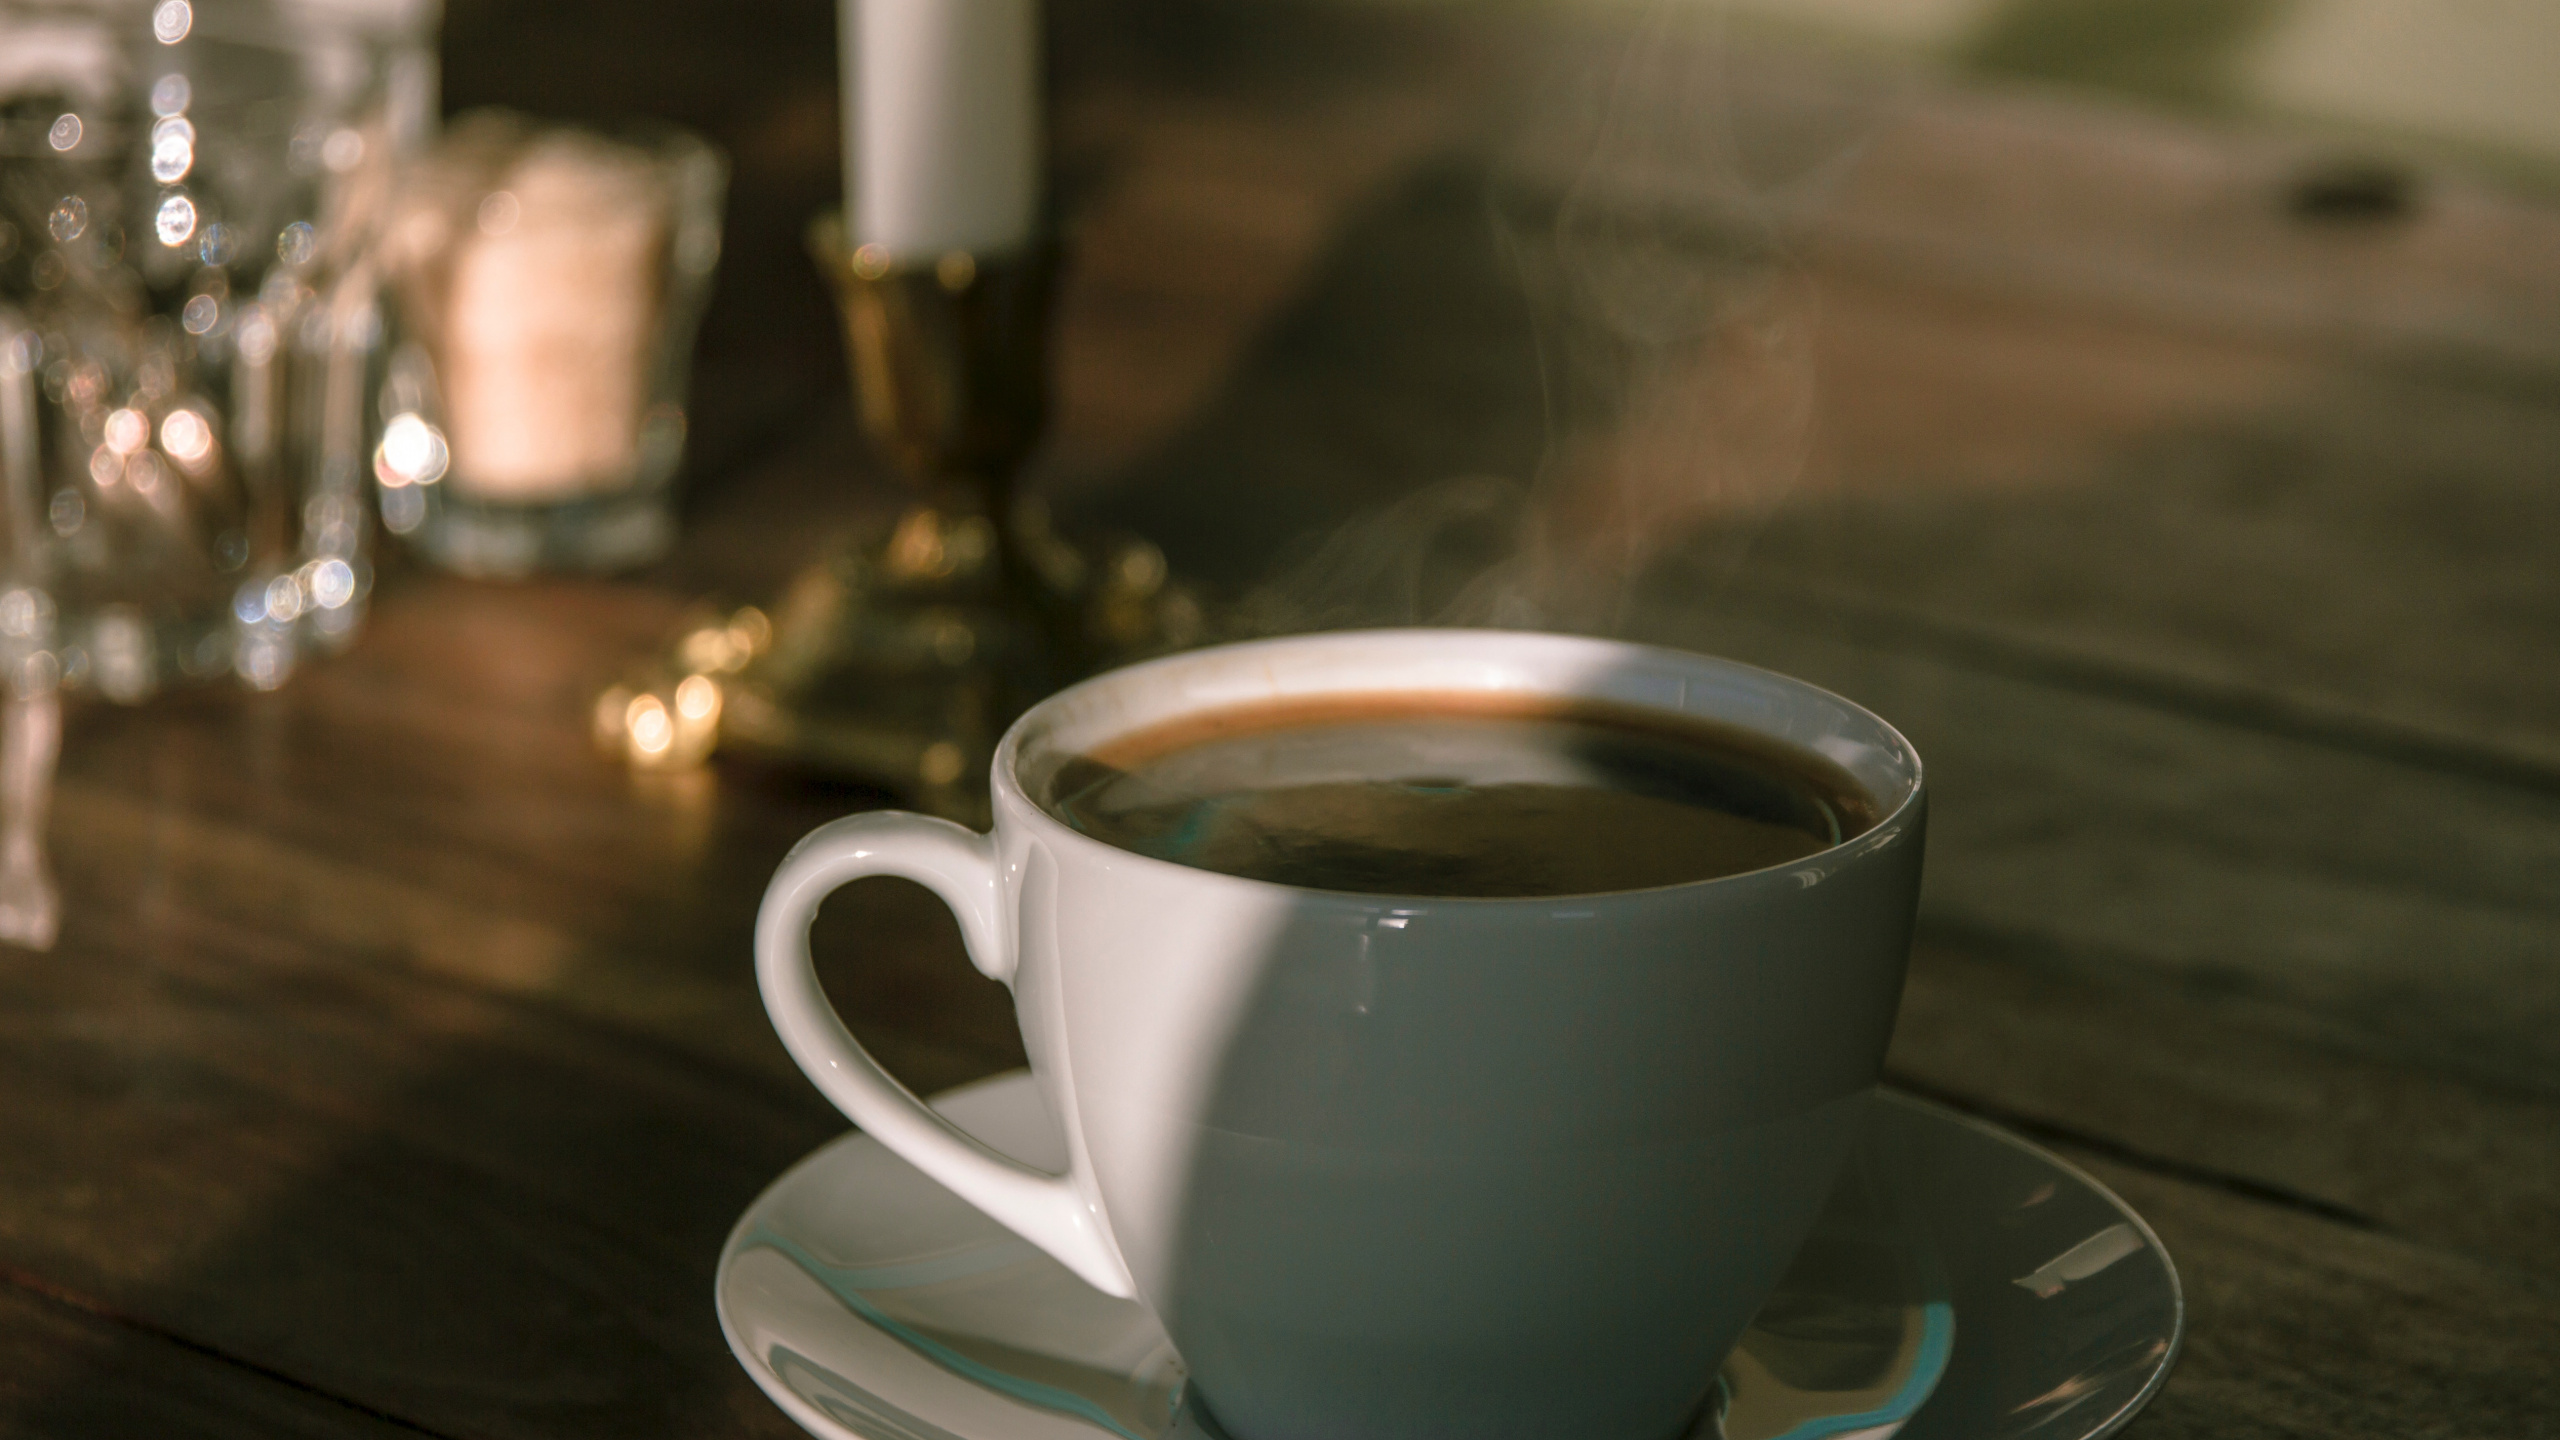 卡布奇诺咖啡, 咖啡杯, 器皿, 古巴咖啡, 蒲公英咖啡 壁纸 2560x1440 允许